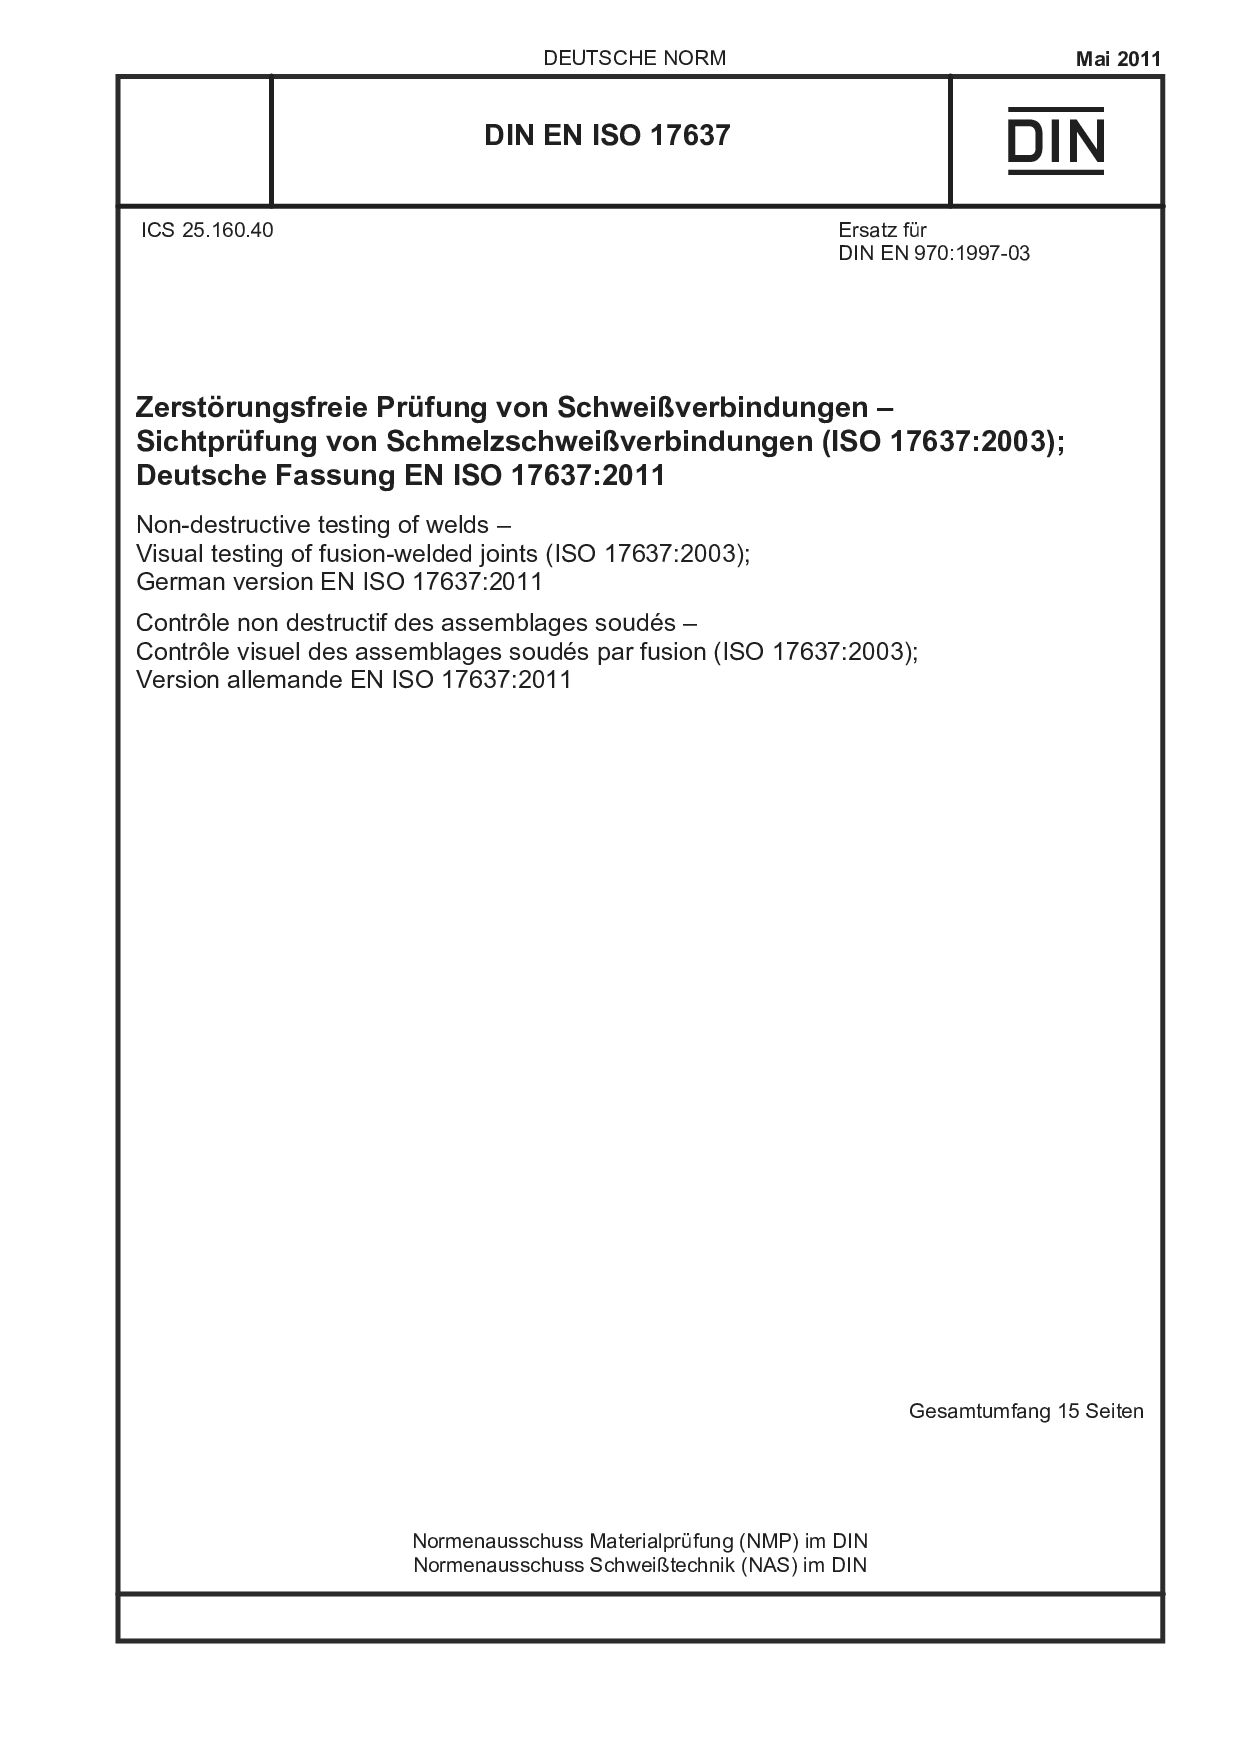 DIN EN ISO 17637:2011封面图